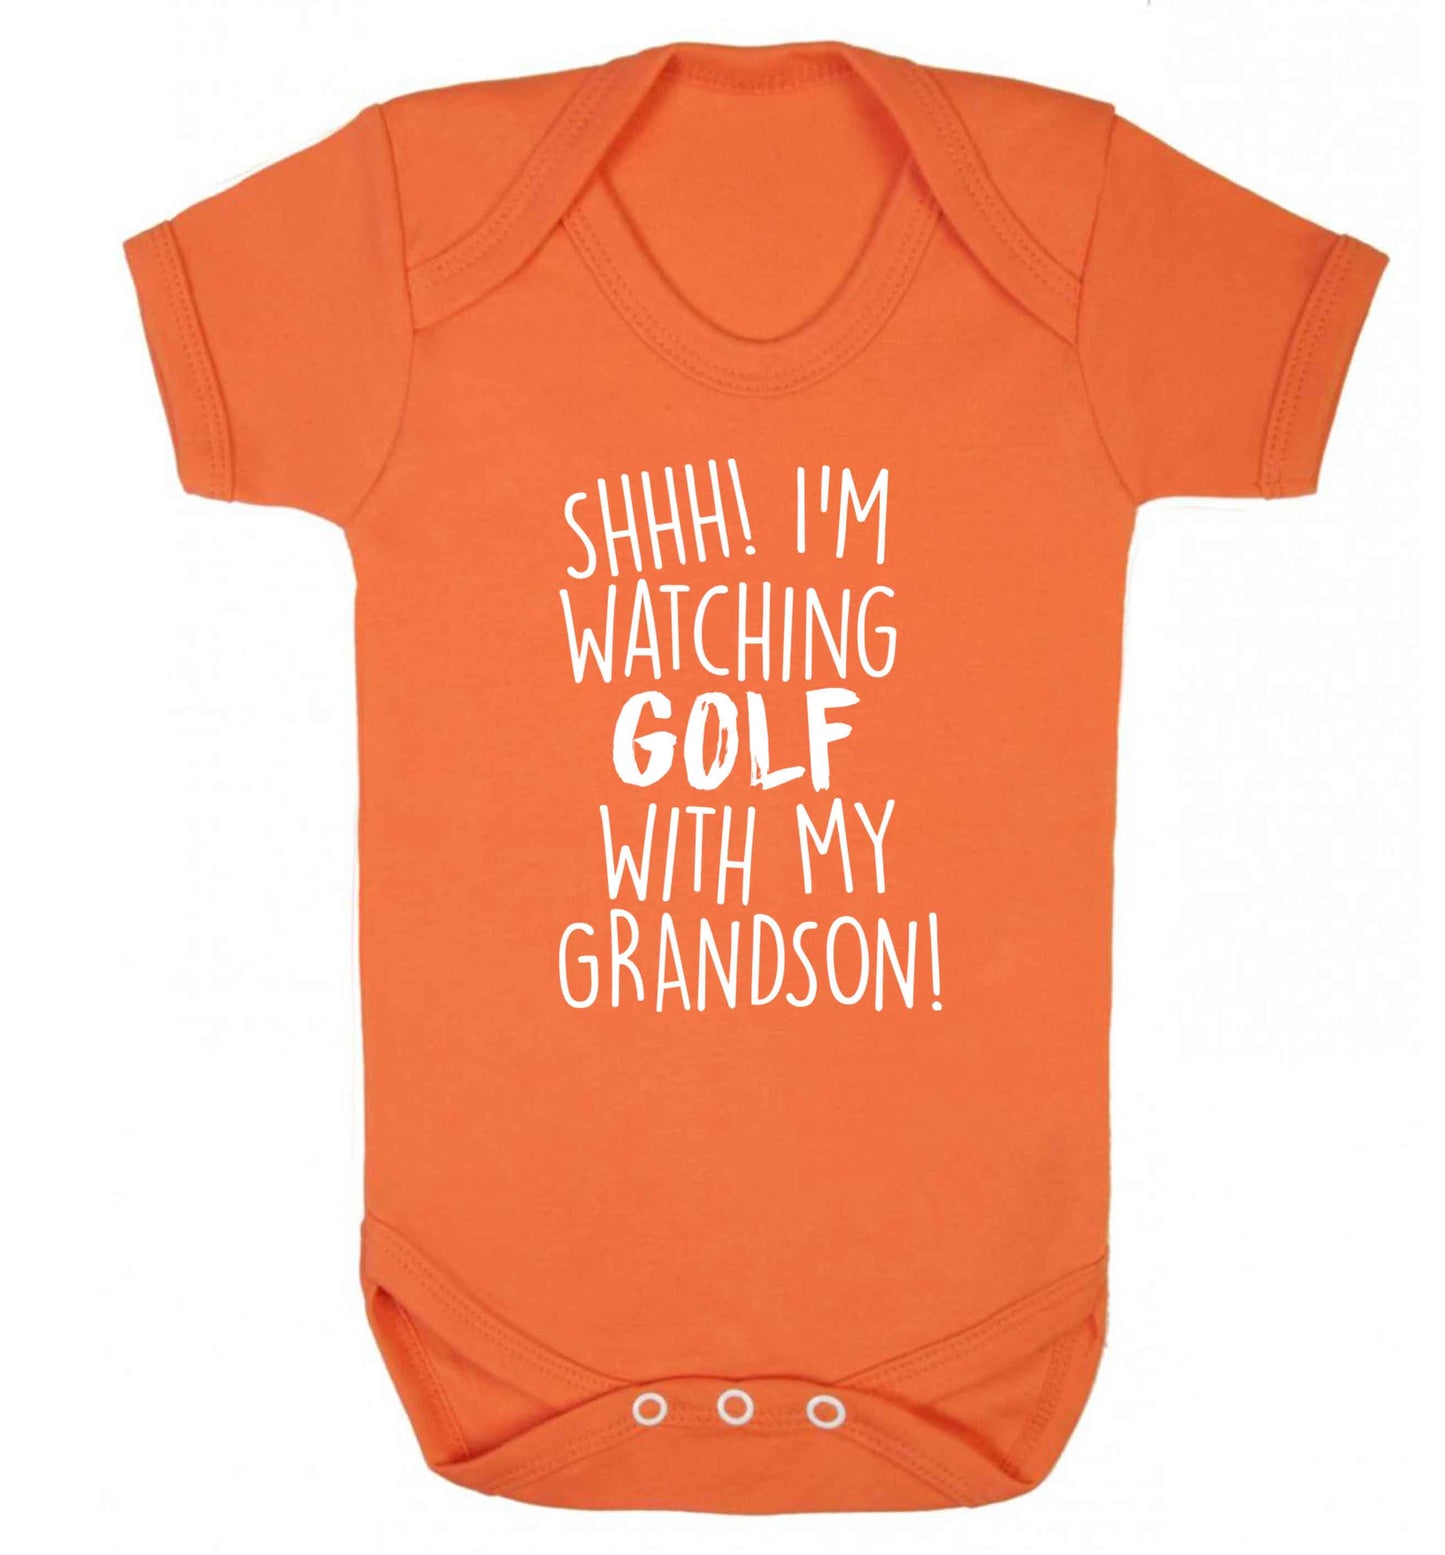 Shh I'm watching golf with my grandsonBaby Vest orange 18-24 months